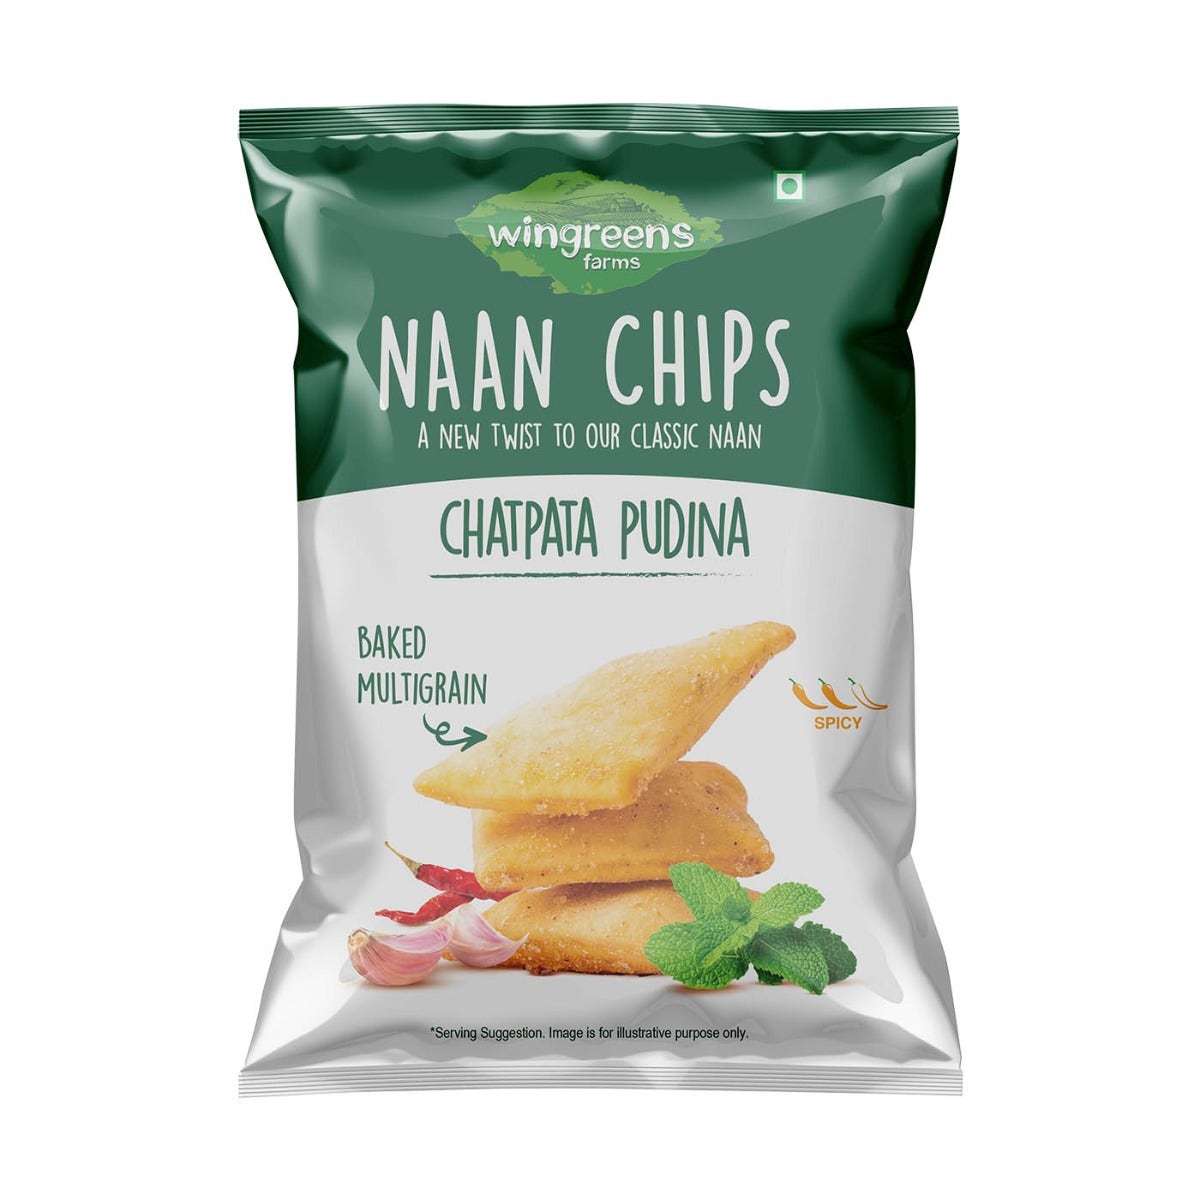 chatpata pudina naan chips